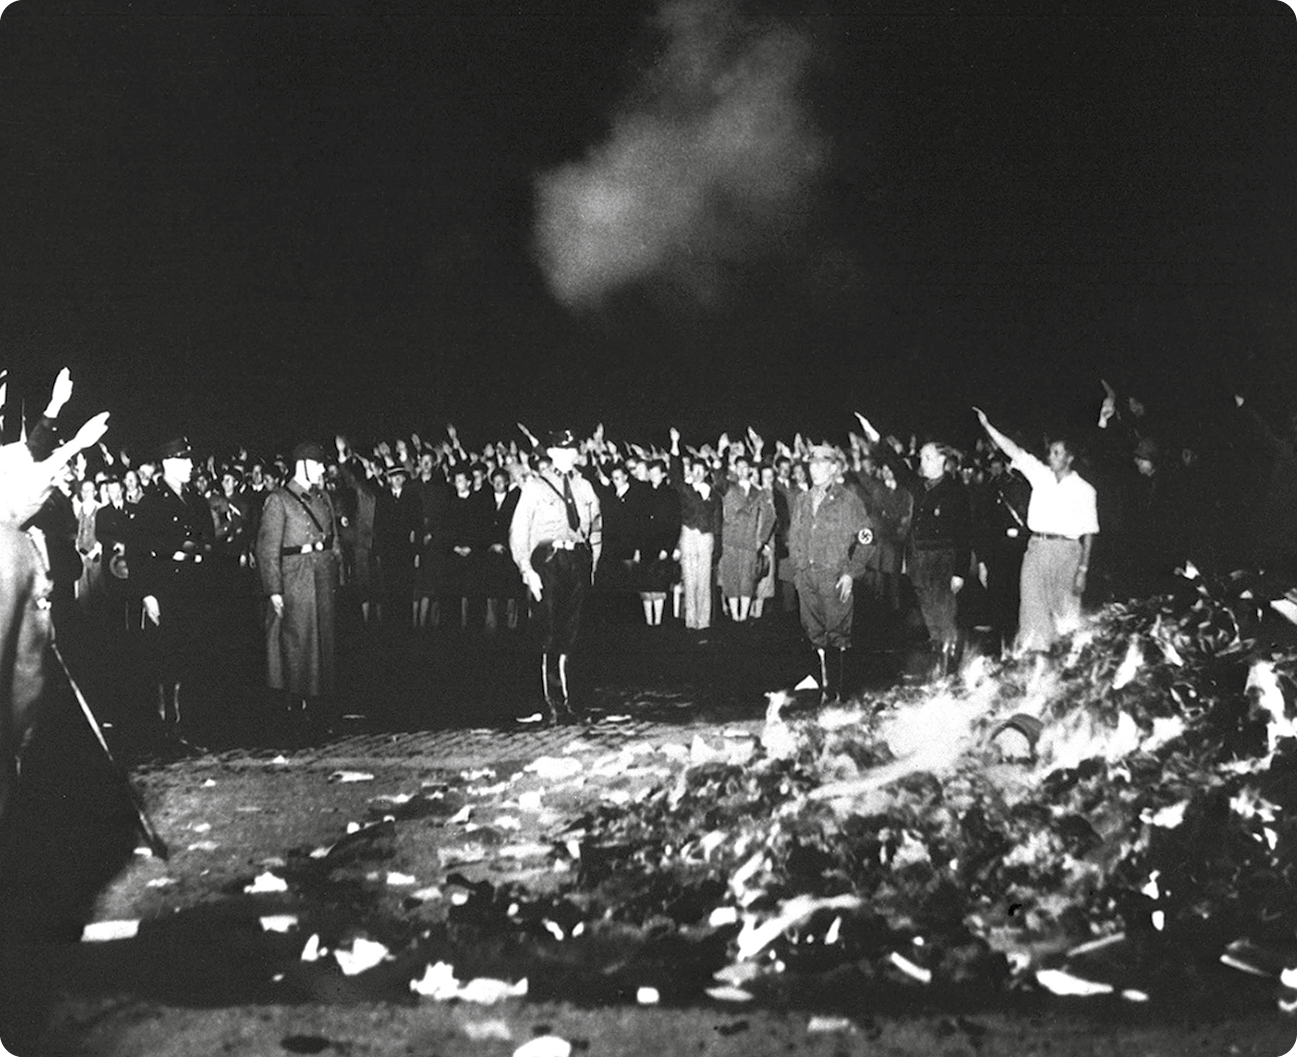 Fotografia em preto e branco. Diversas pessoas em uma rua. Elas estão com uma das mãos levantadas na posição diagonal. Centralizado, uma fogueira com livros.